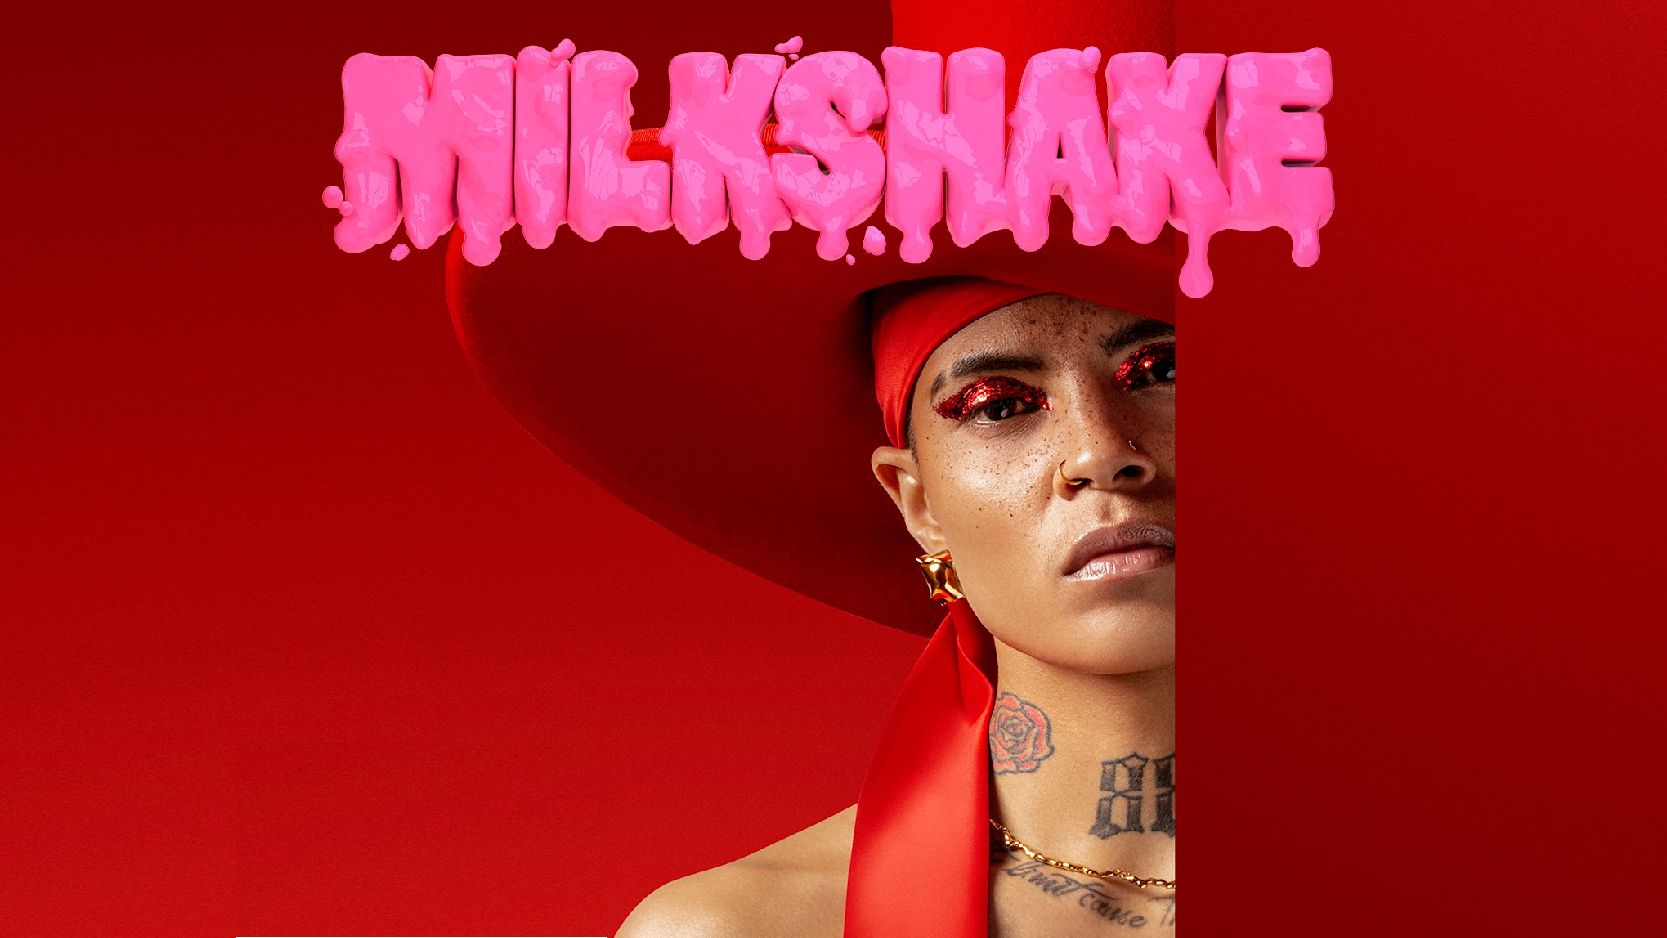 Milkshake cover